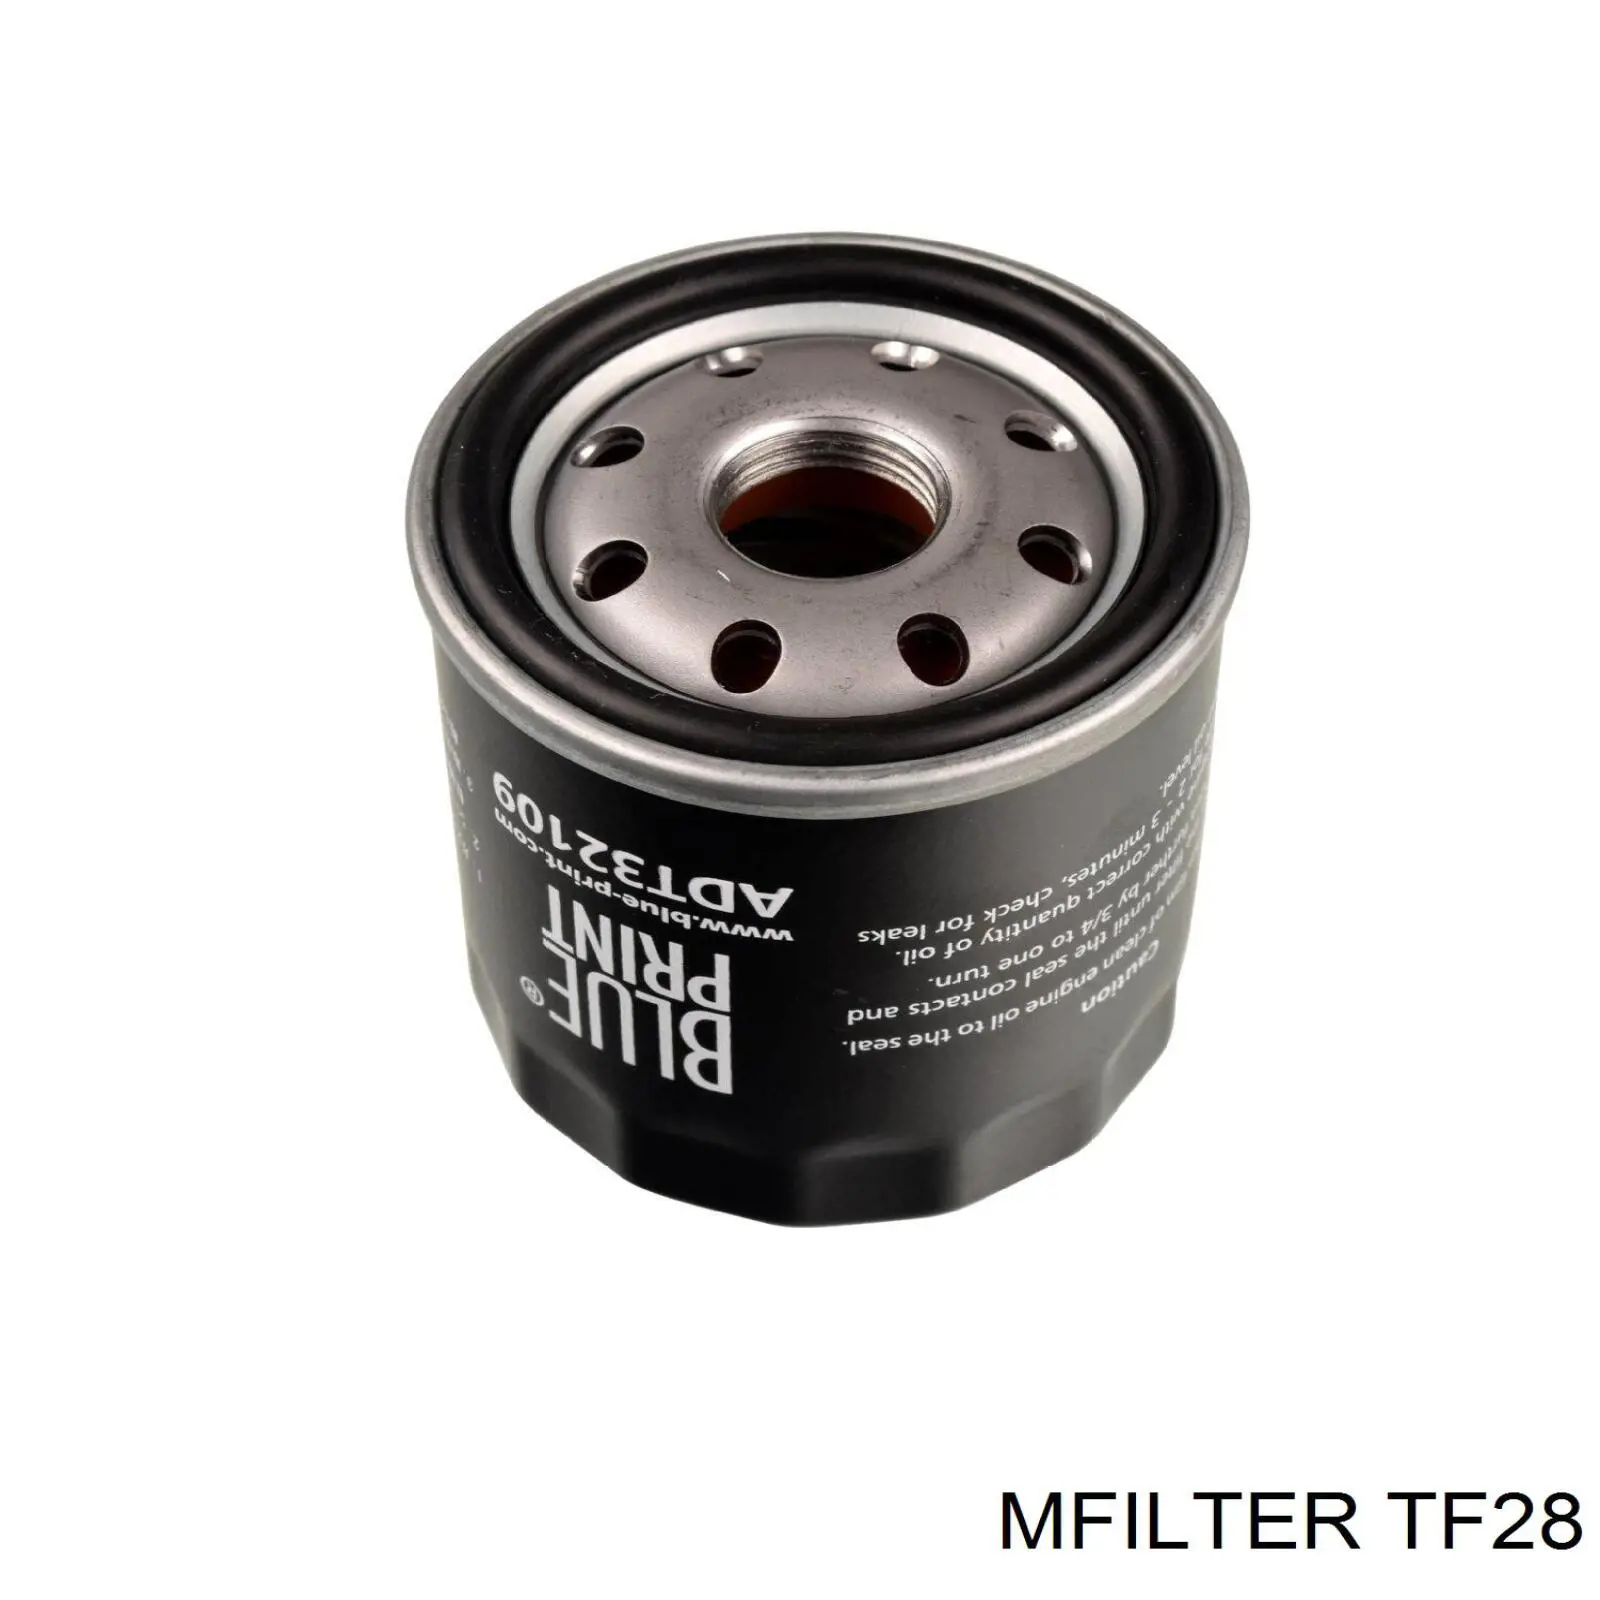 TF28 Mfilter filtro de aceite